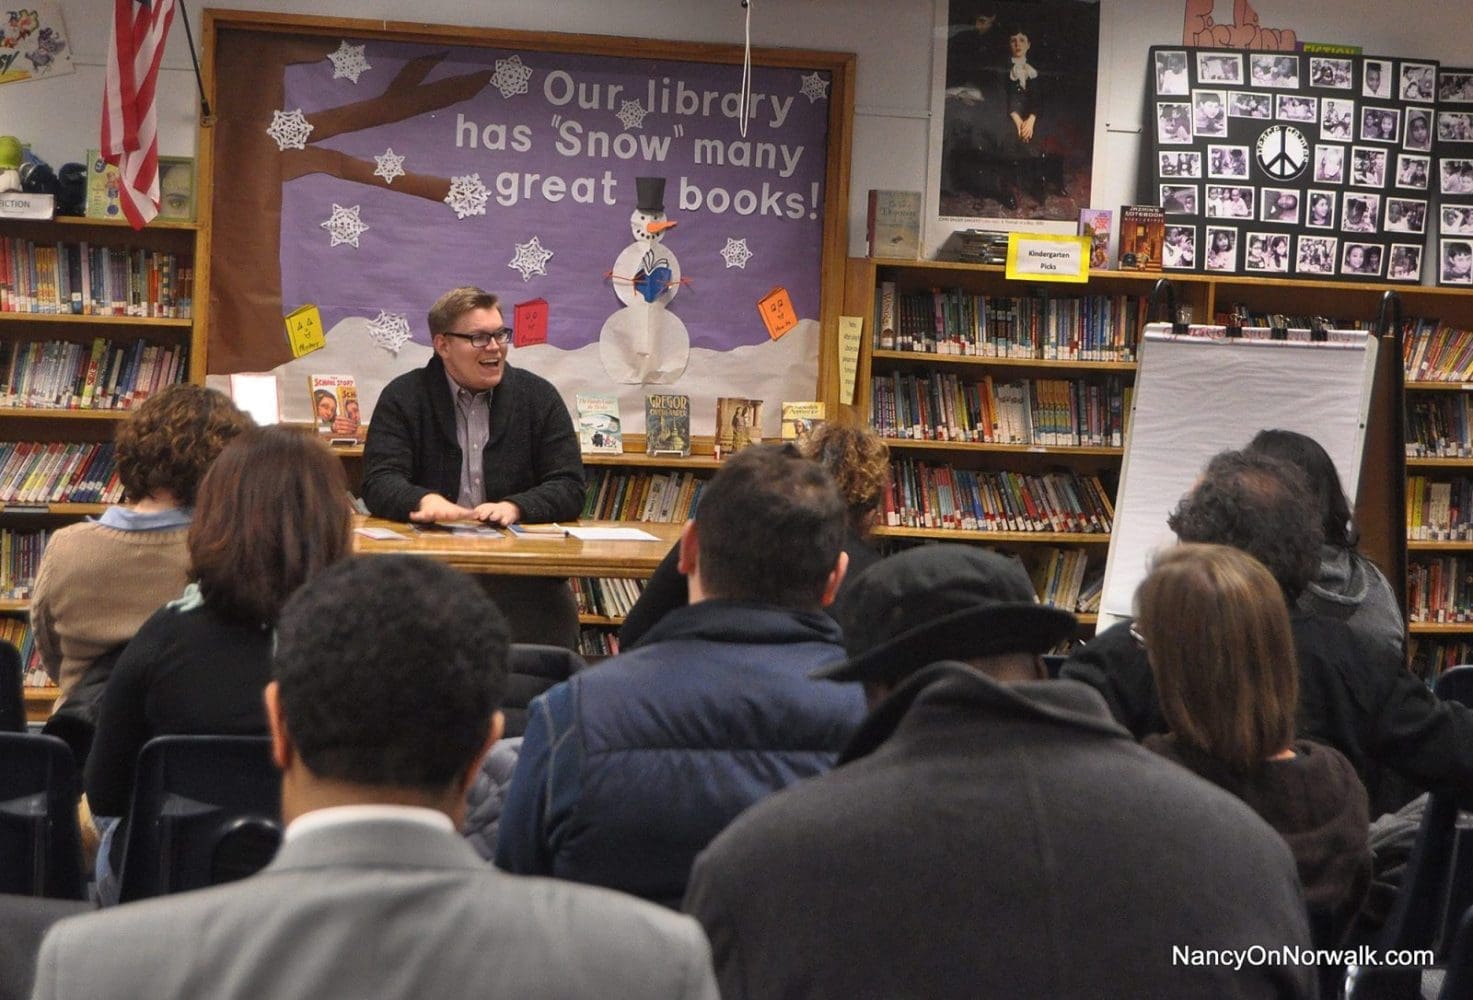 South Norwalk school dominates Anderson’s BoE conversation